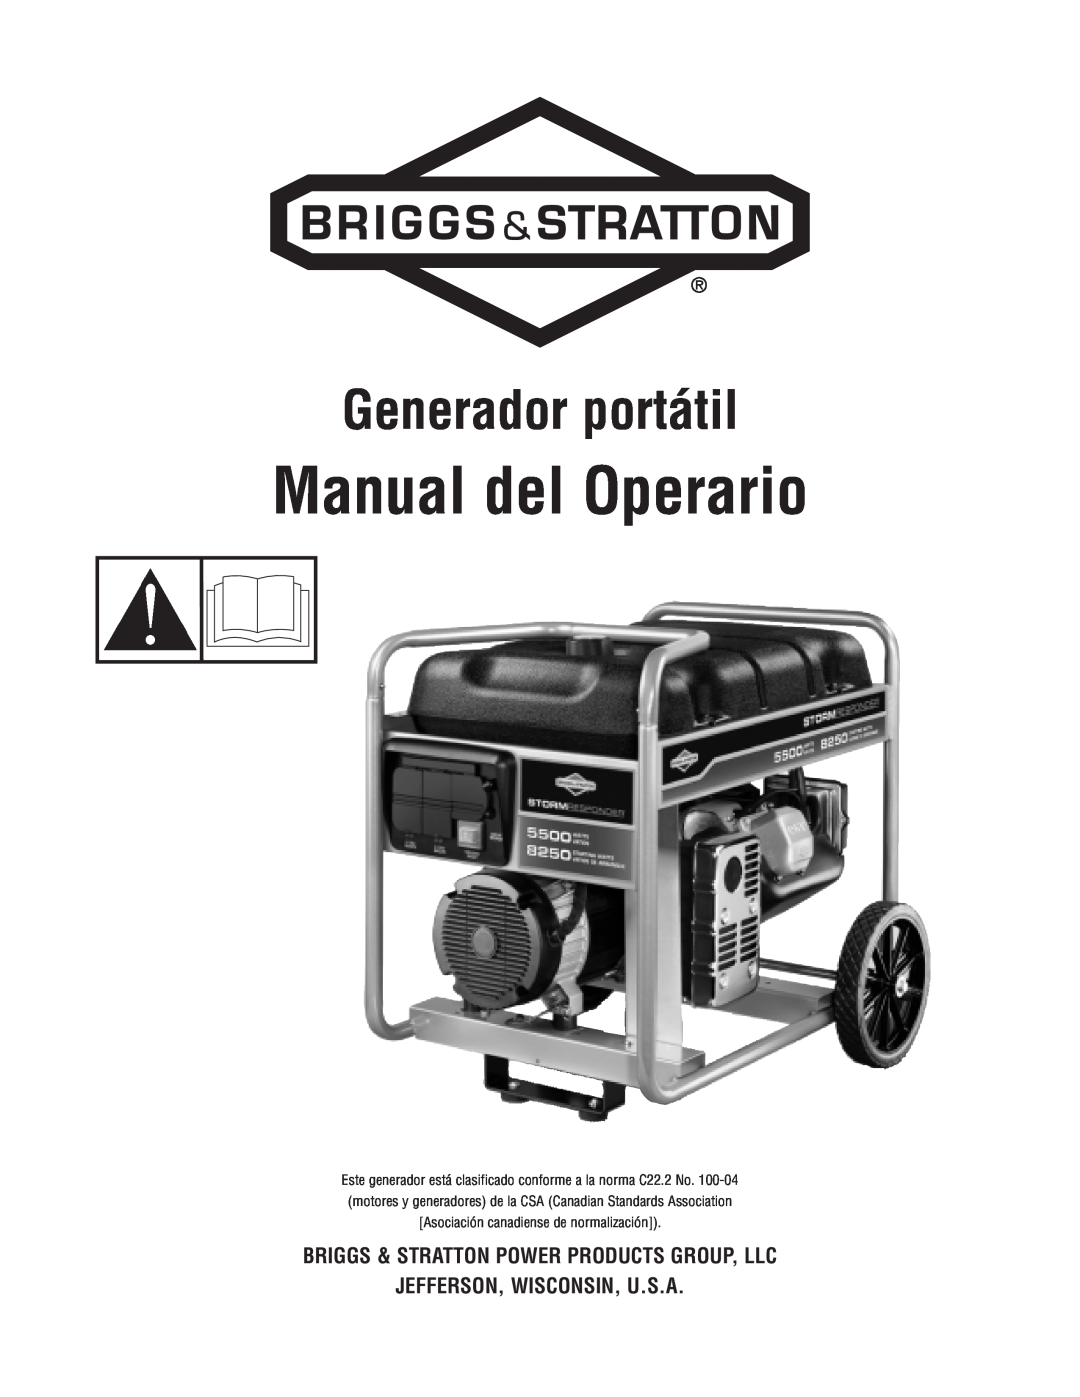 Briggs & Stratton Portable Generator manual Manual del Operario, Generador portátil 